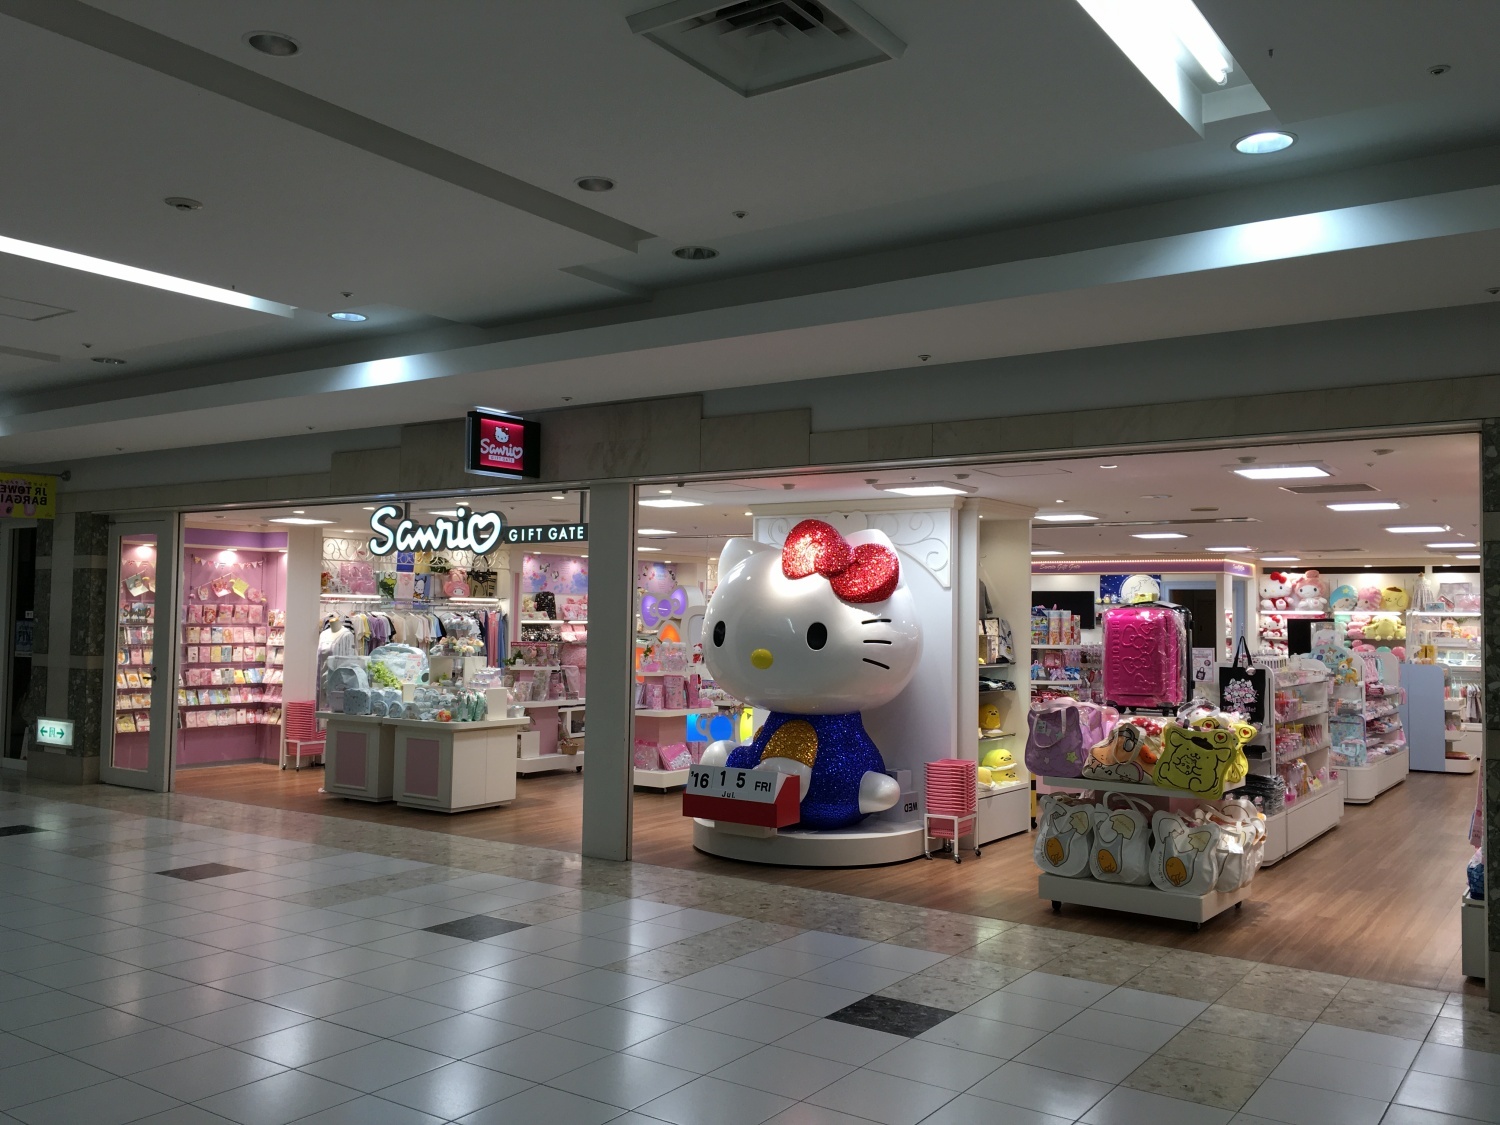 Sanrio Gift Gate 札幌アピア店 Japan Shopping Now